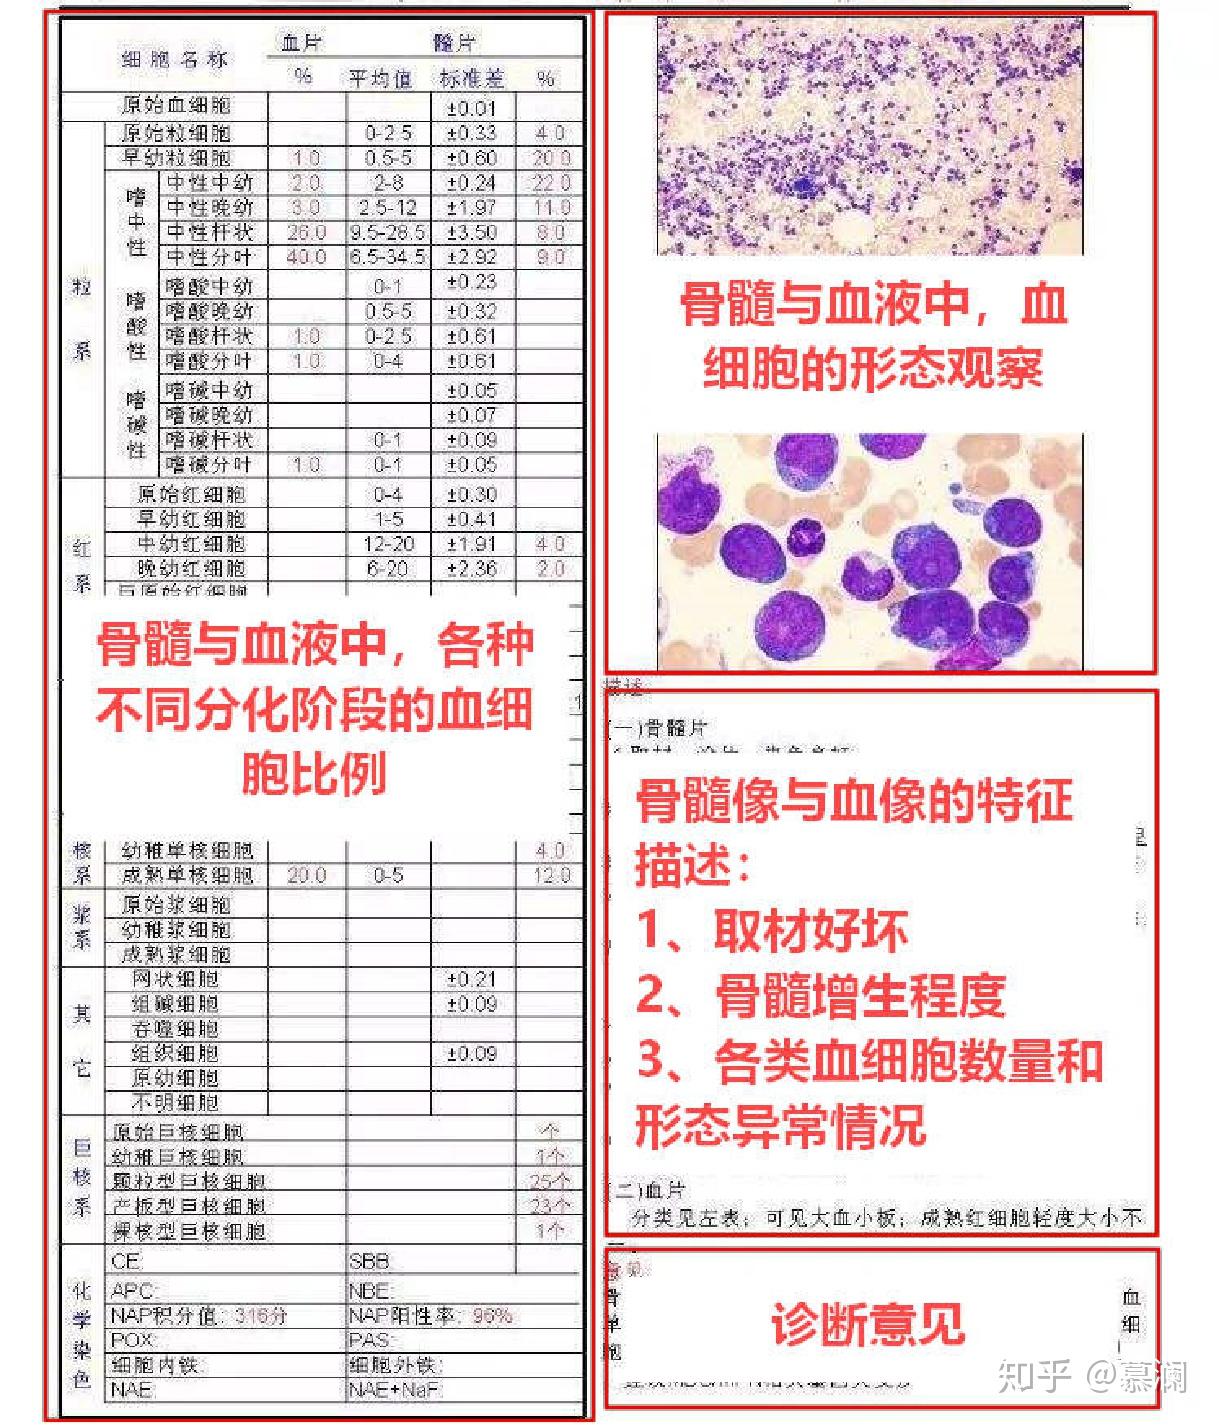 L1 液基薄层细胞制片机-广州三瑞医疗器械有限公司